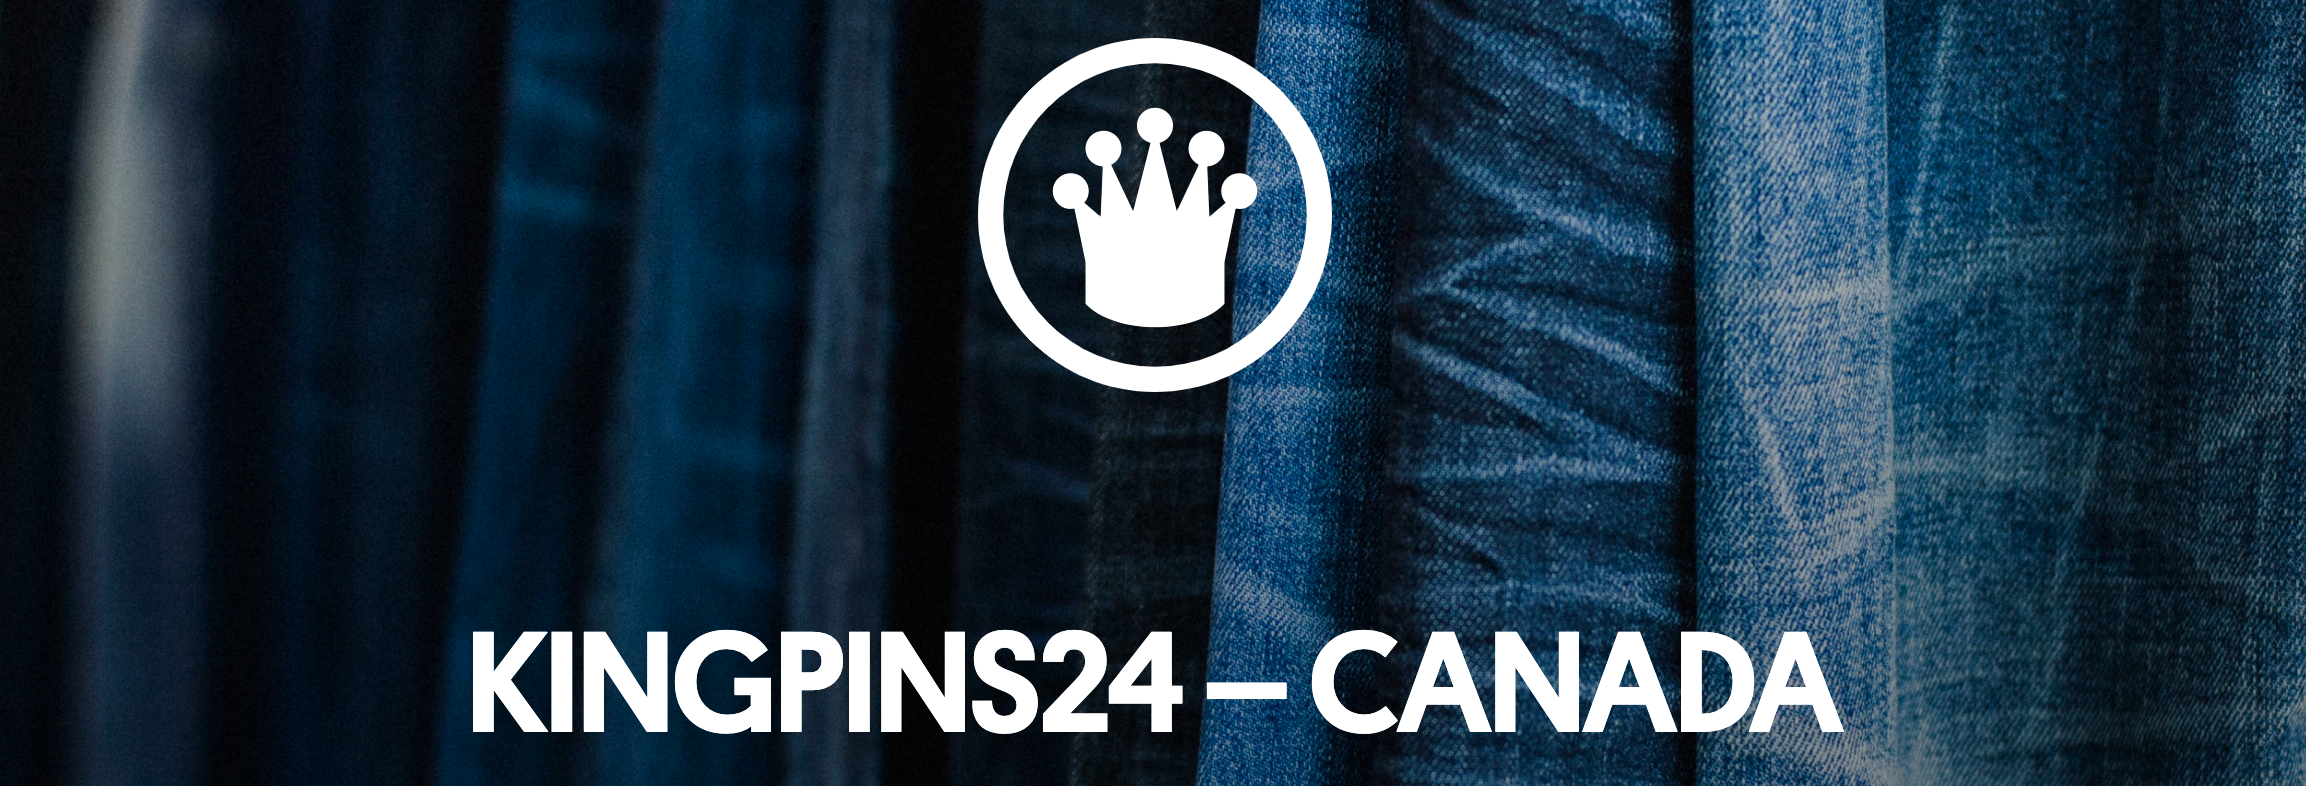 Kingpins24 Canada